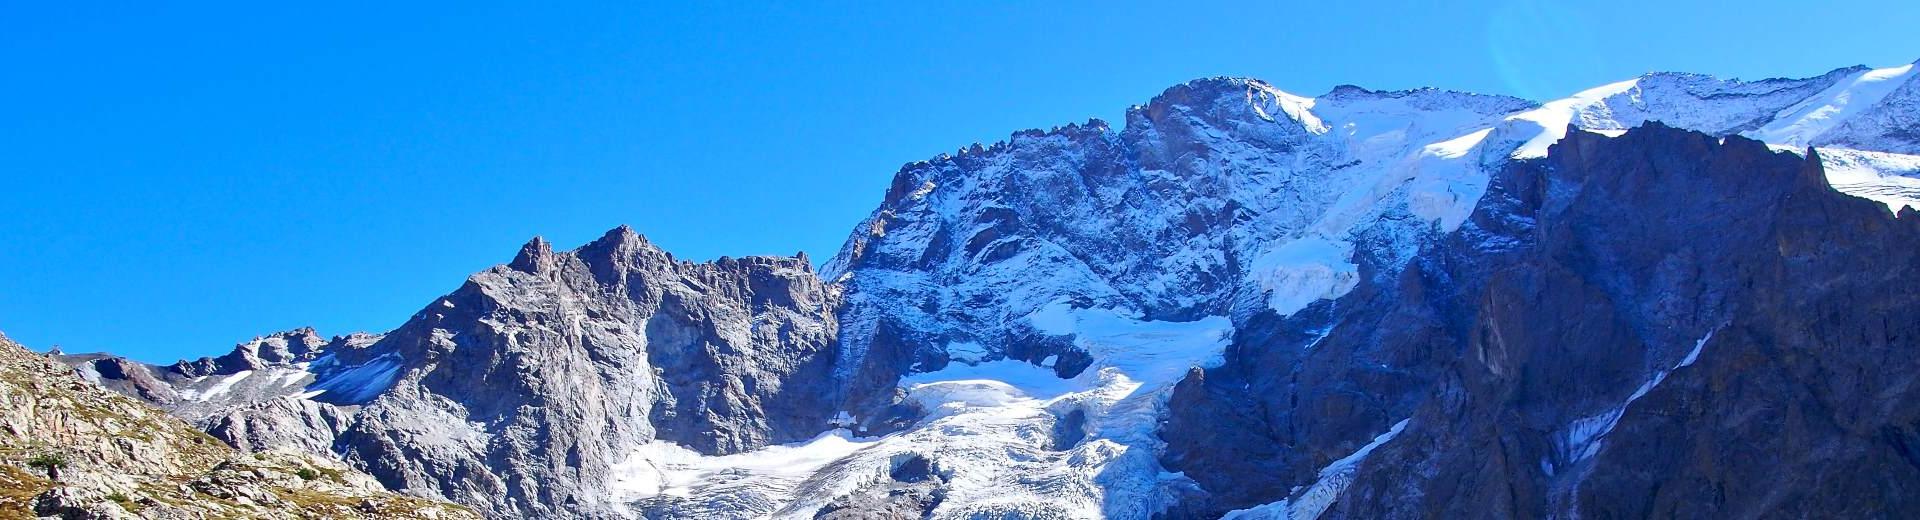 Vacanze sulle Alpi francesi – Le tue vacanze invernali da sogno - Casamundo